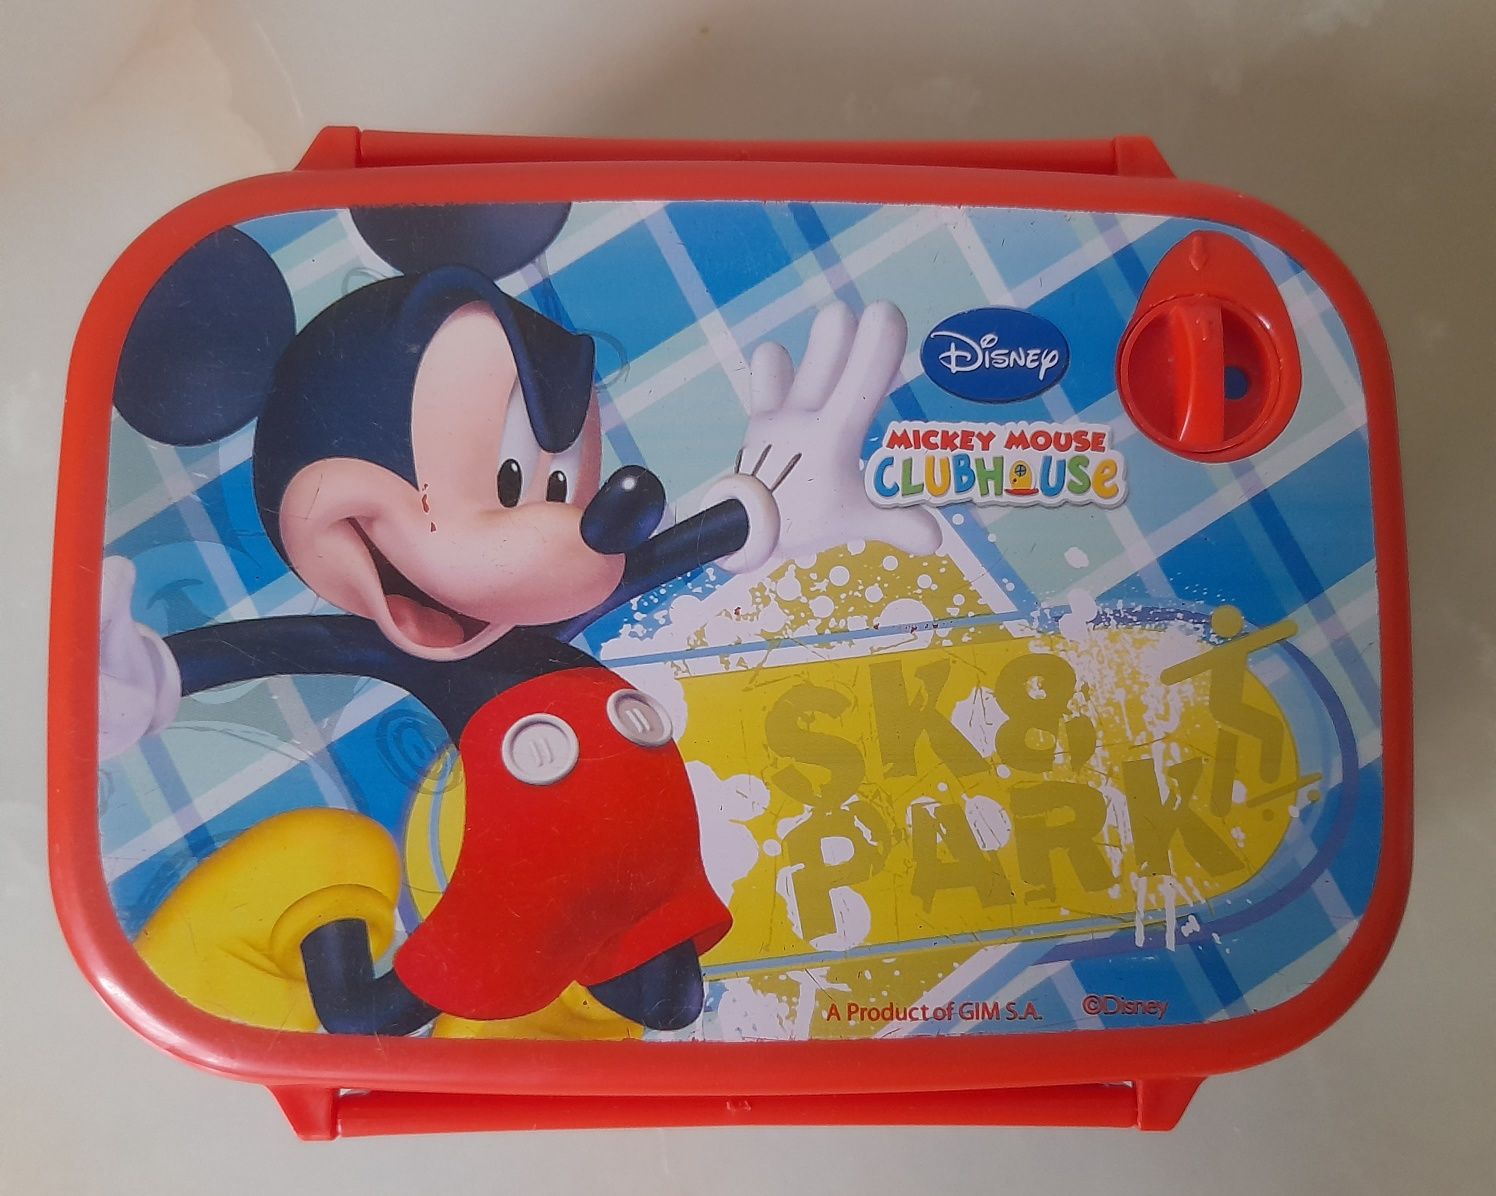 Śniadaniówka pudełko Disney